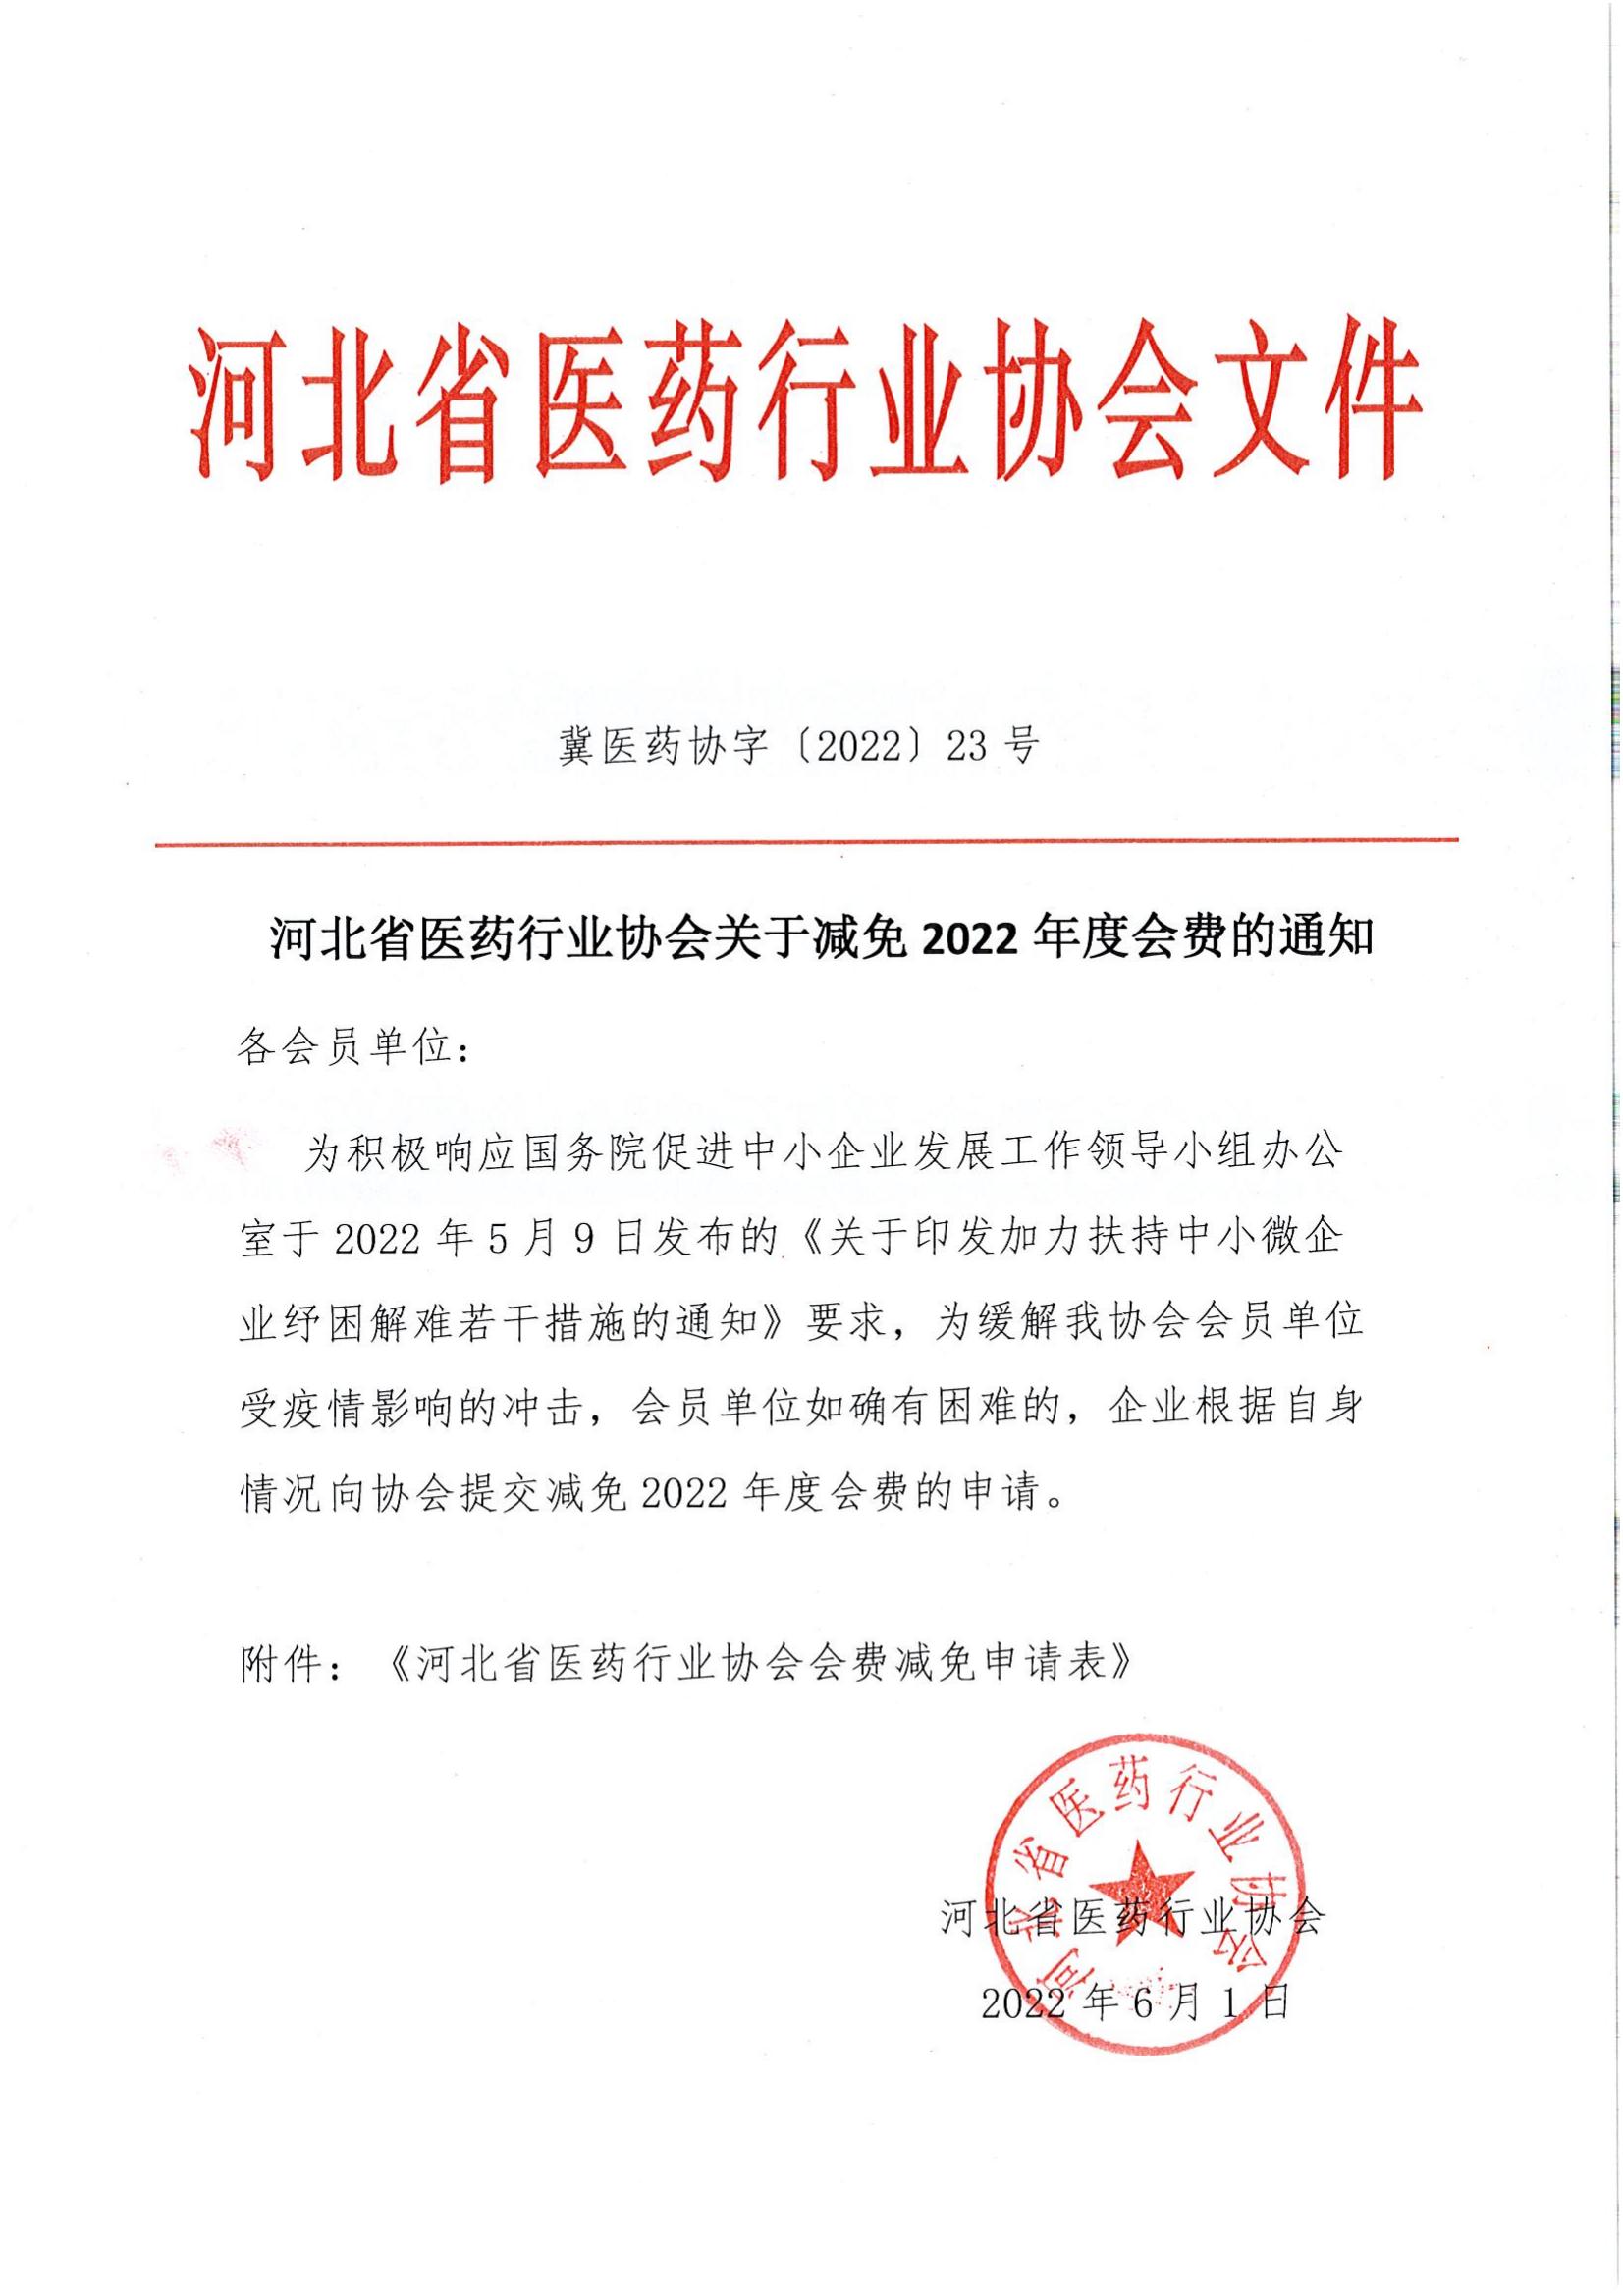 河北省医药行业协会关于减免2022年度会费的通知_00.jpg